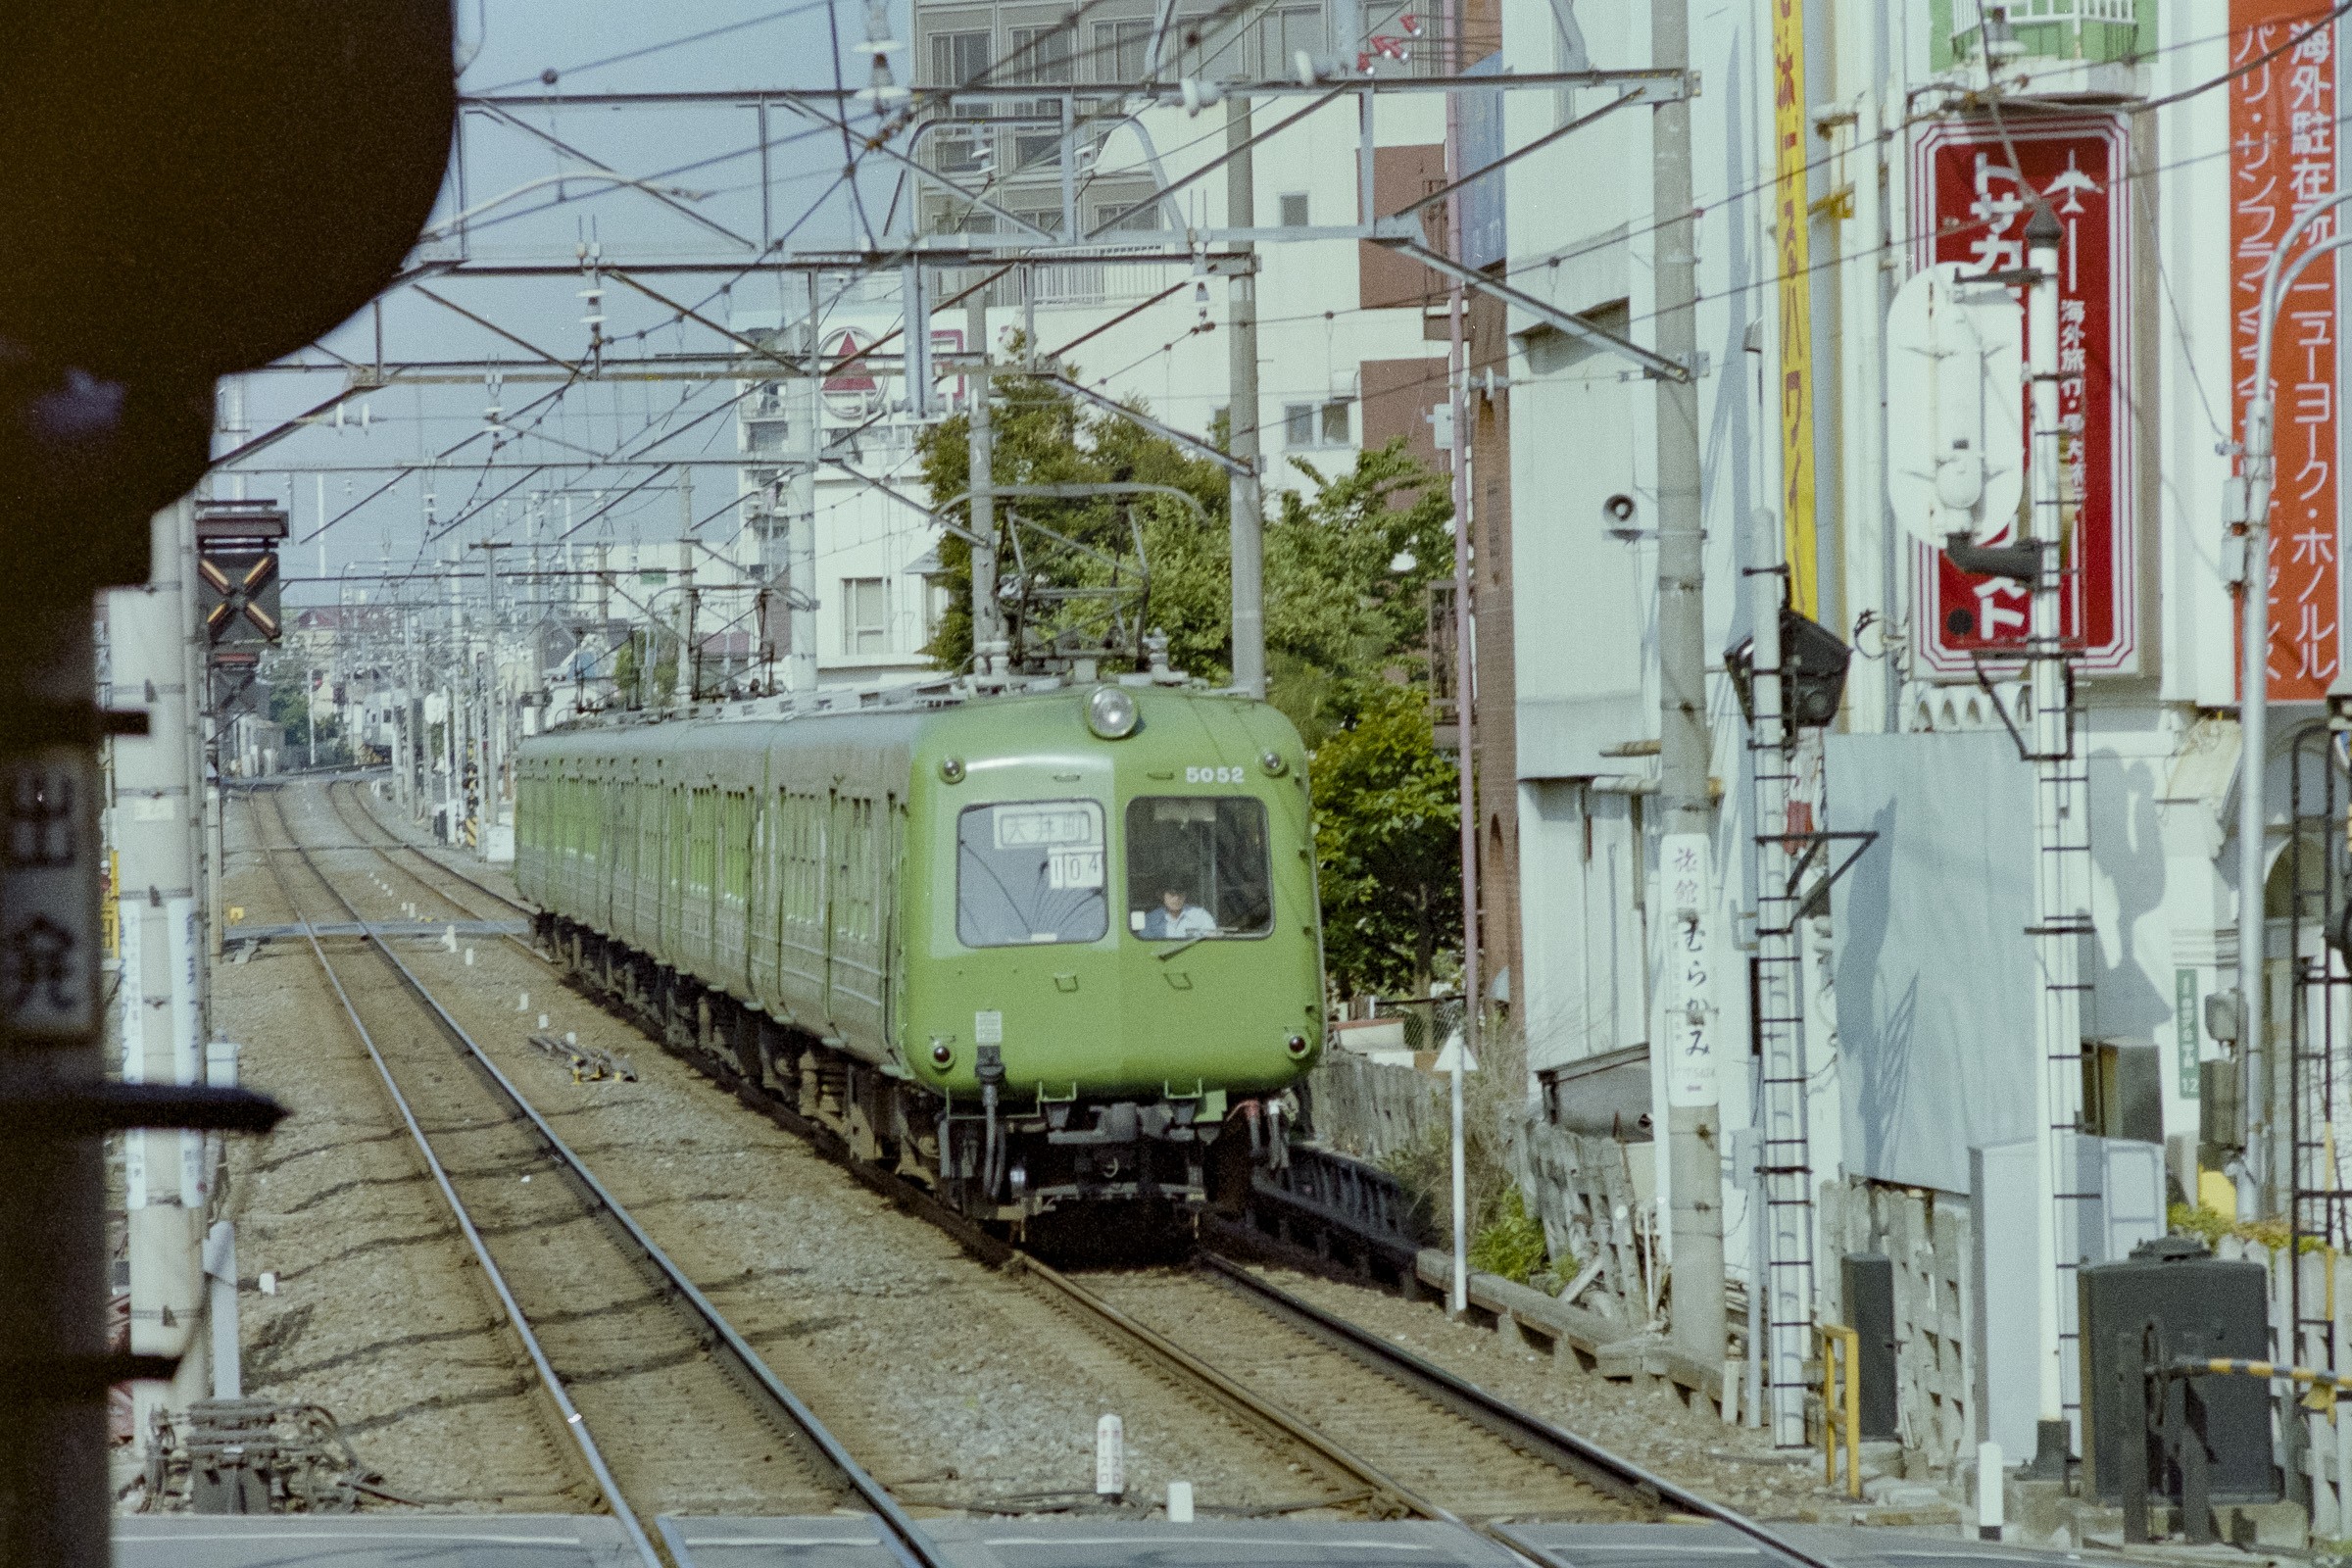 大井町線を走る 東急5000系電車 初代 フリー写真素材 イメージガレージ